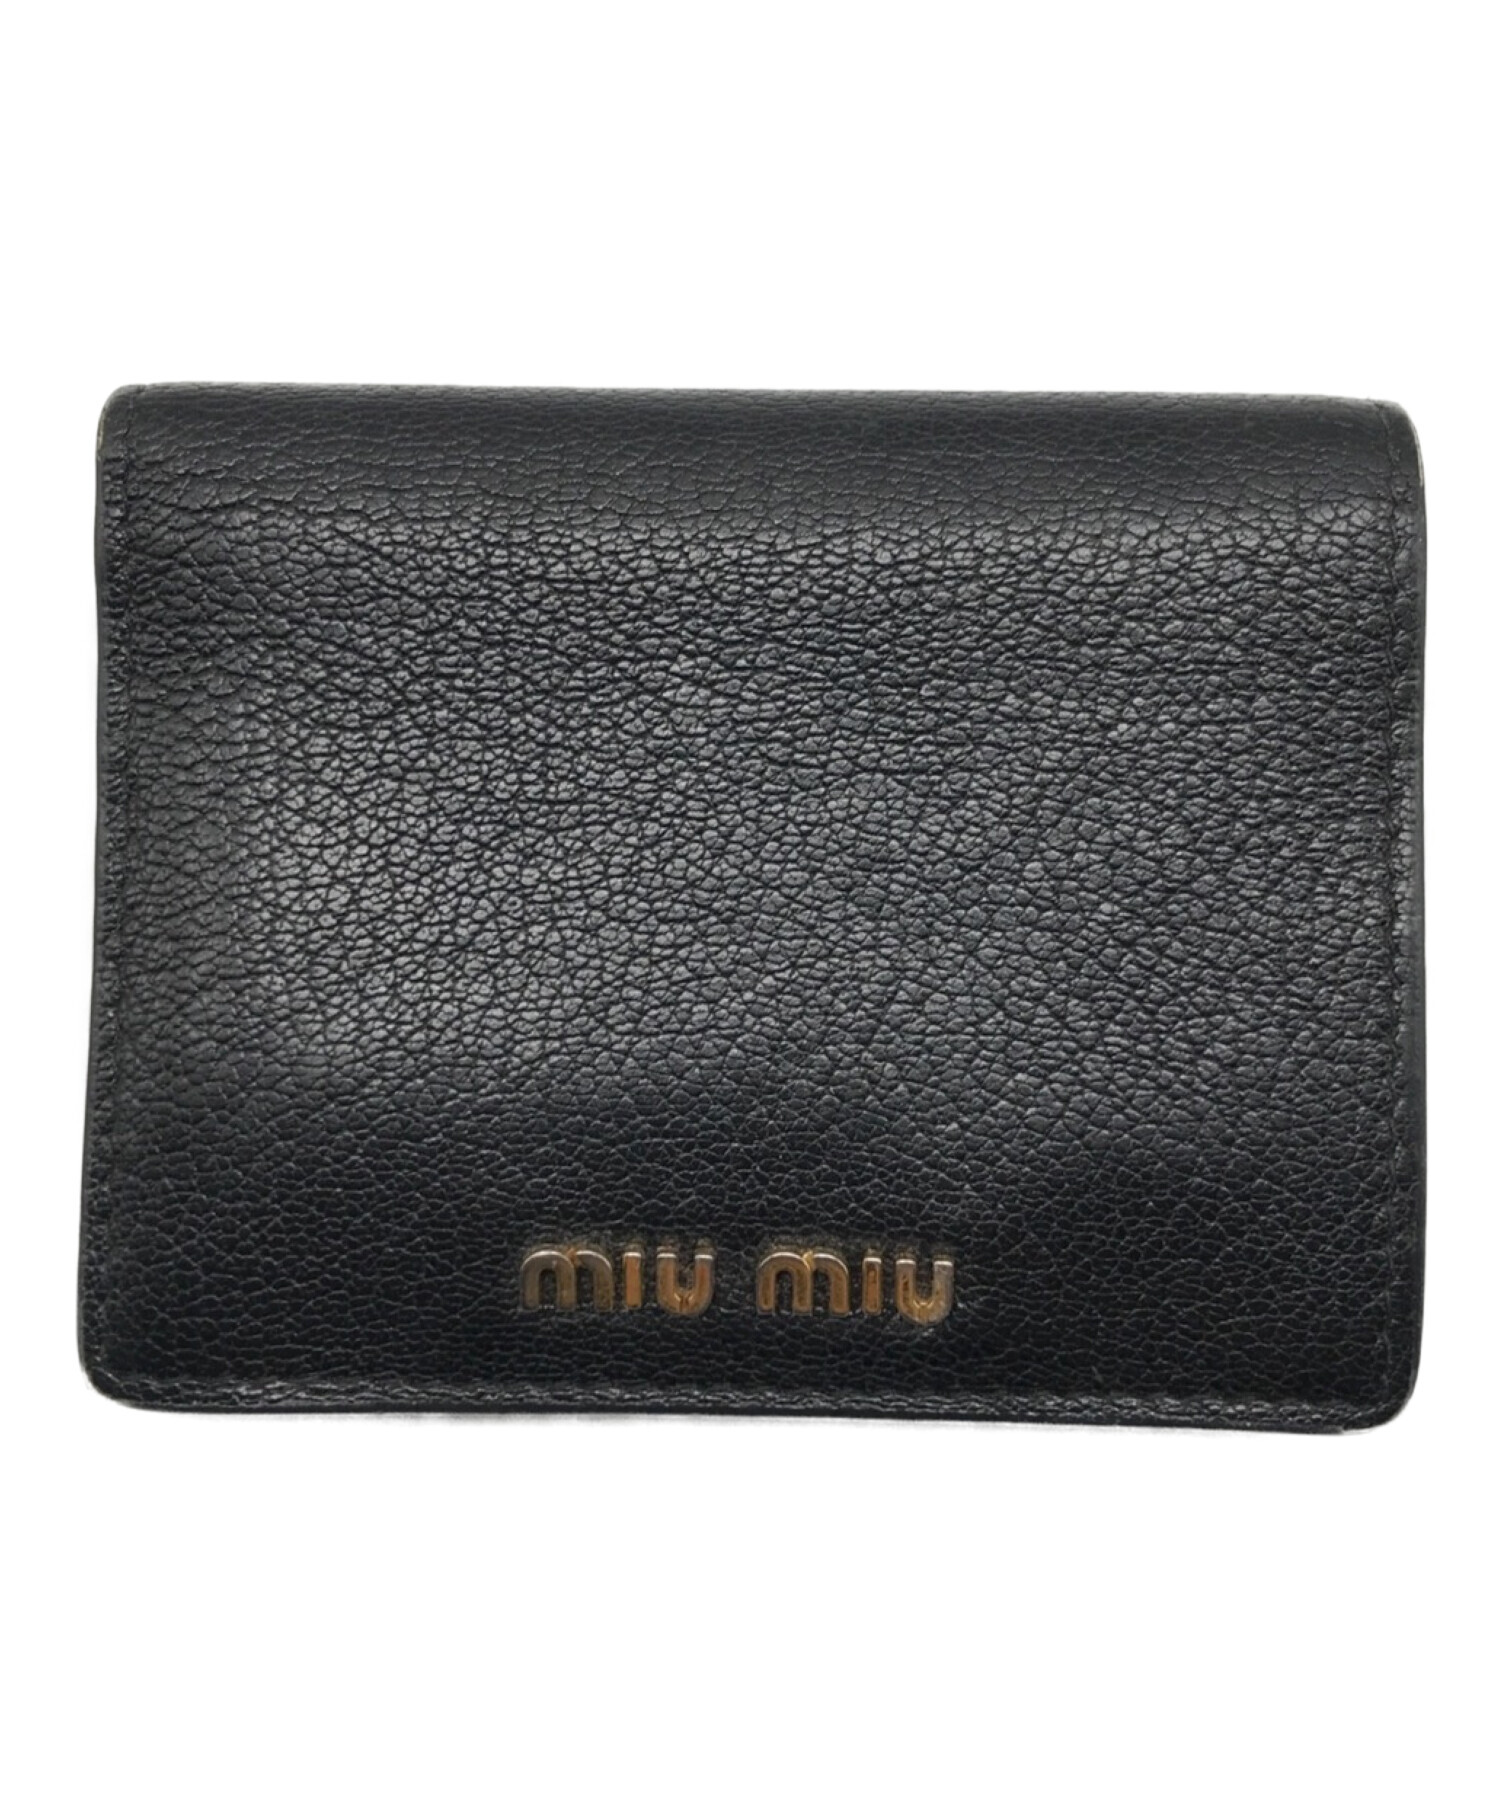 中古・古着通販】MIU MIU (ミュウミュウ) 2つ折り財布 ブラック